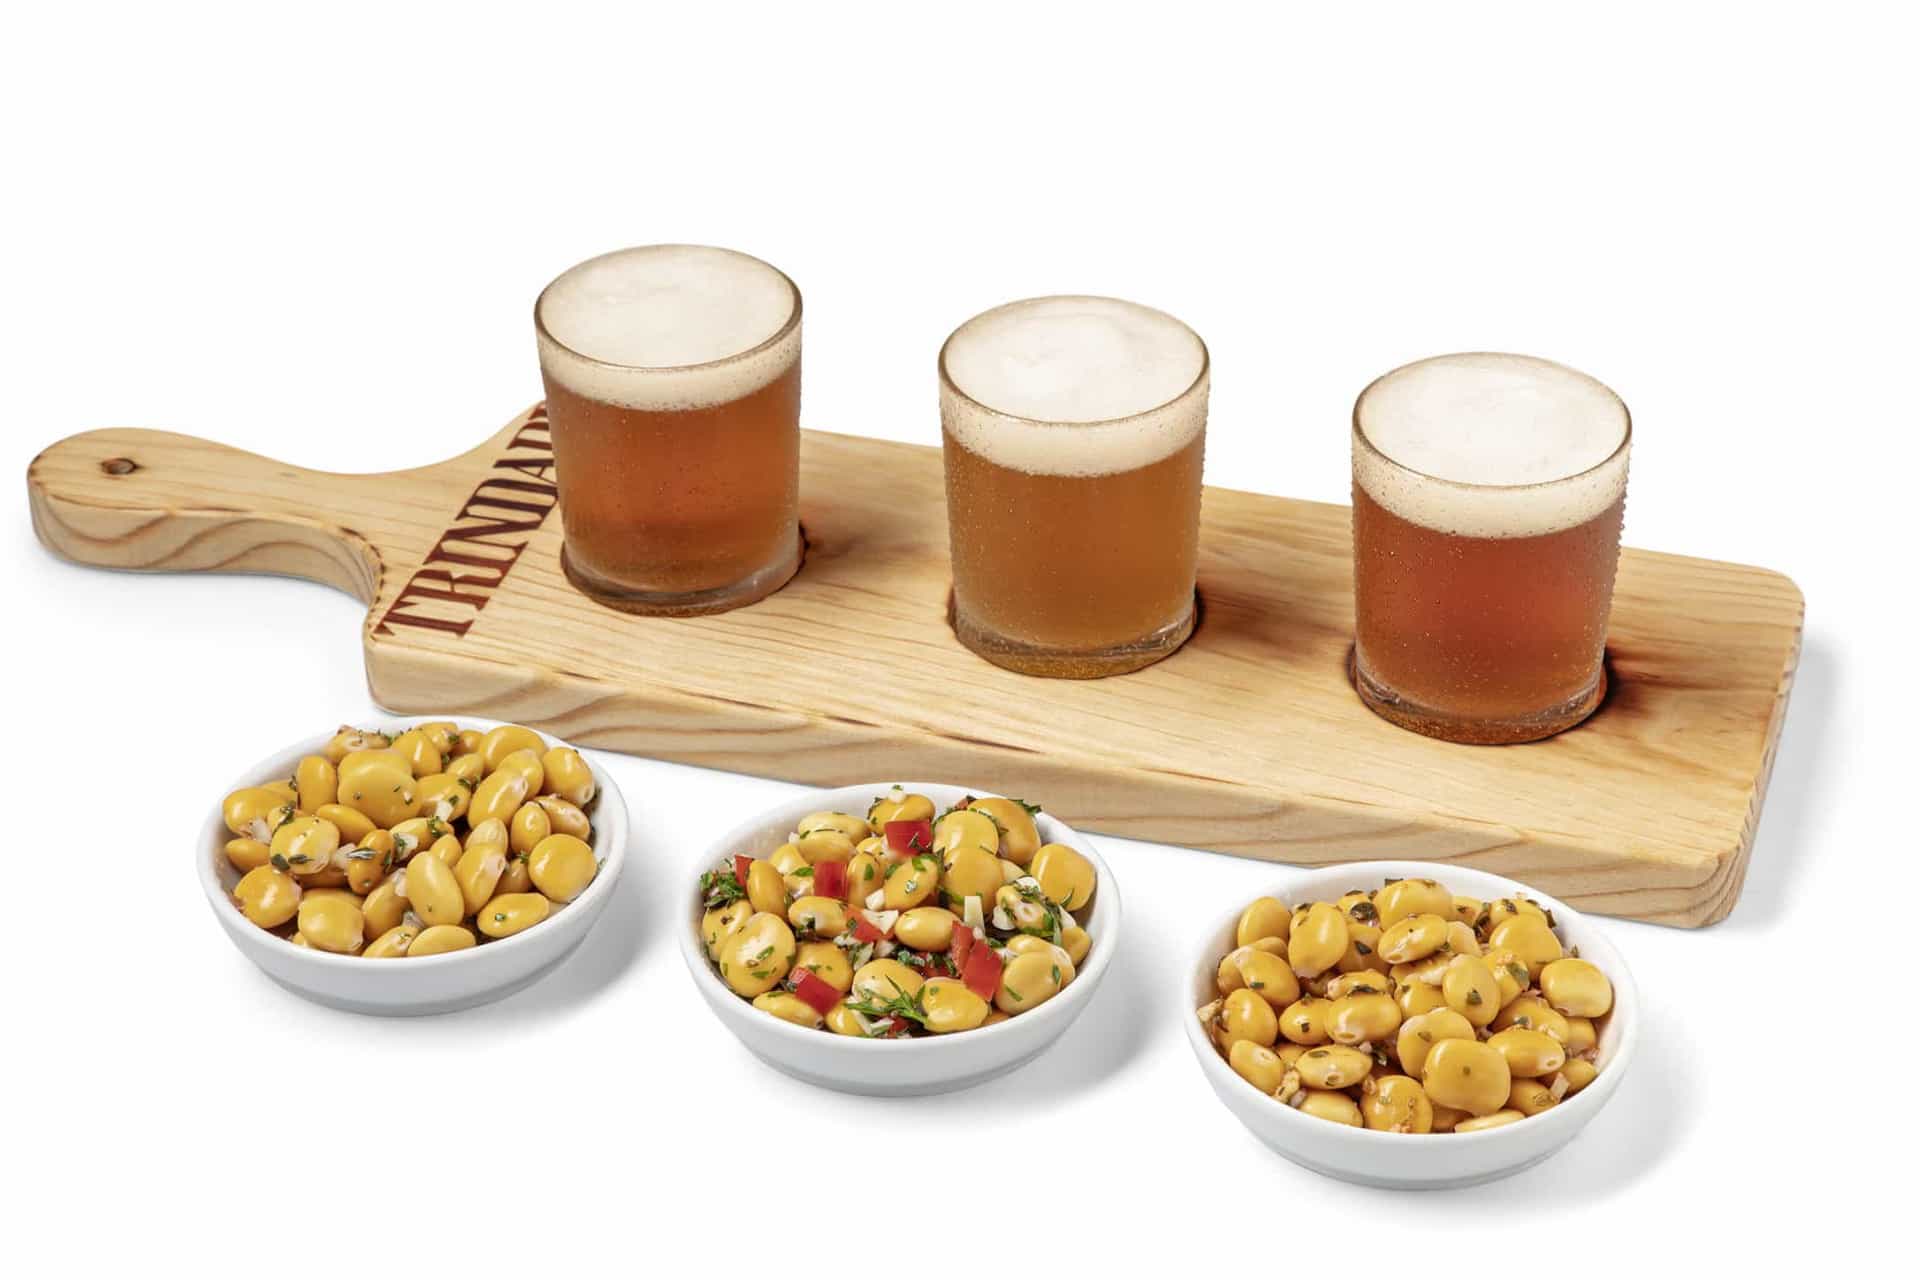 A nova tábua de degustação de cervejas artesanais da Trindade